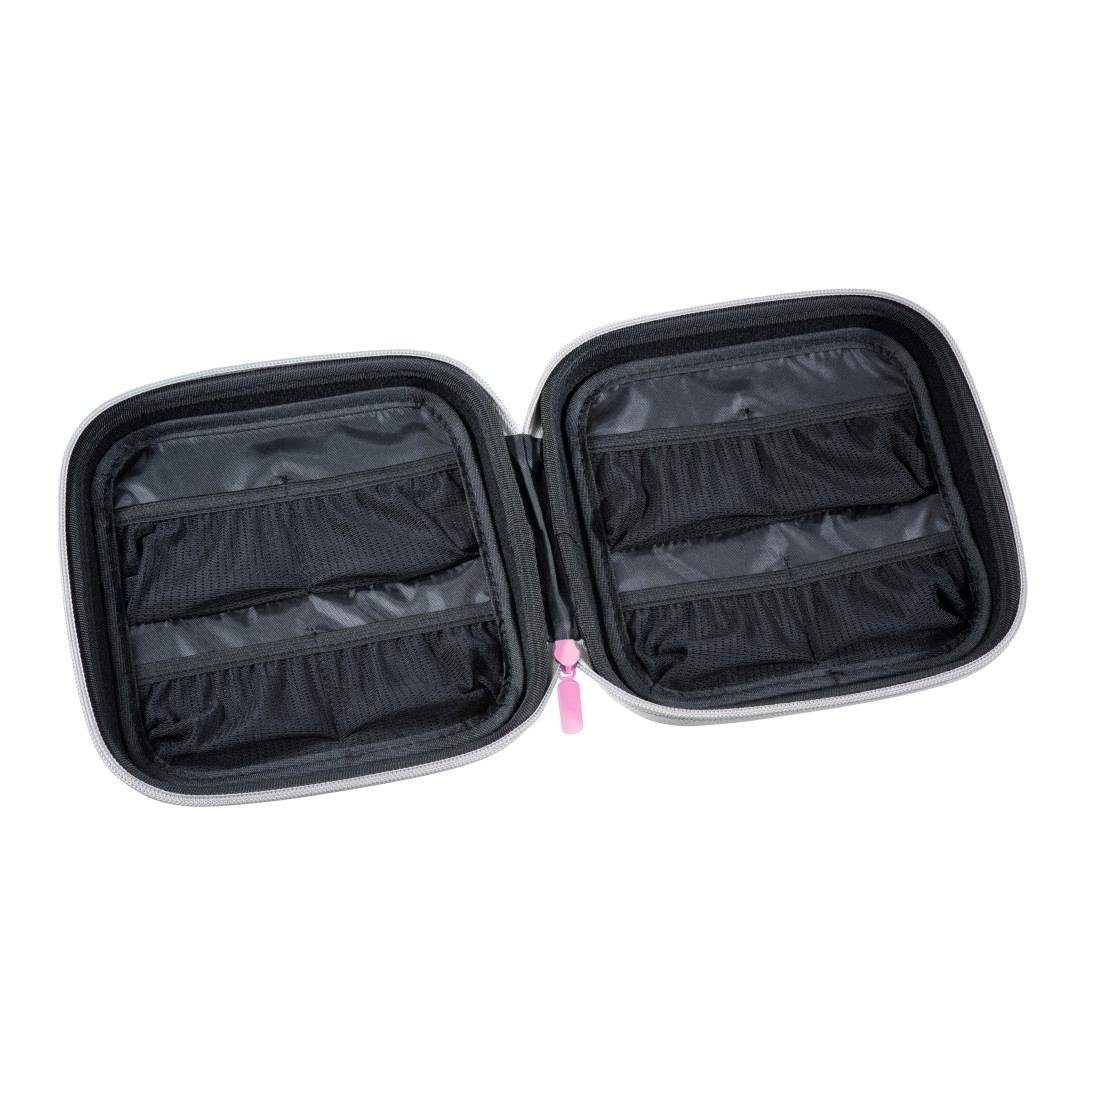 Hama Tragetasche Hartschalen Tasche pink Tonietasche 8 – Tonie, Aufbewahrung, für 16 Tonies®